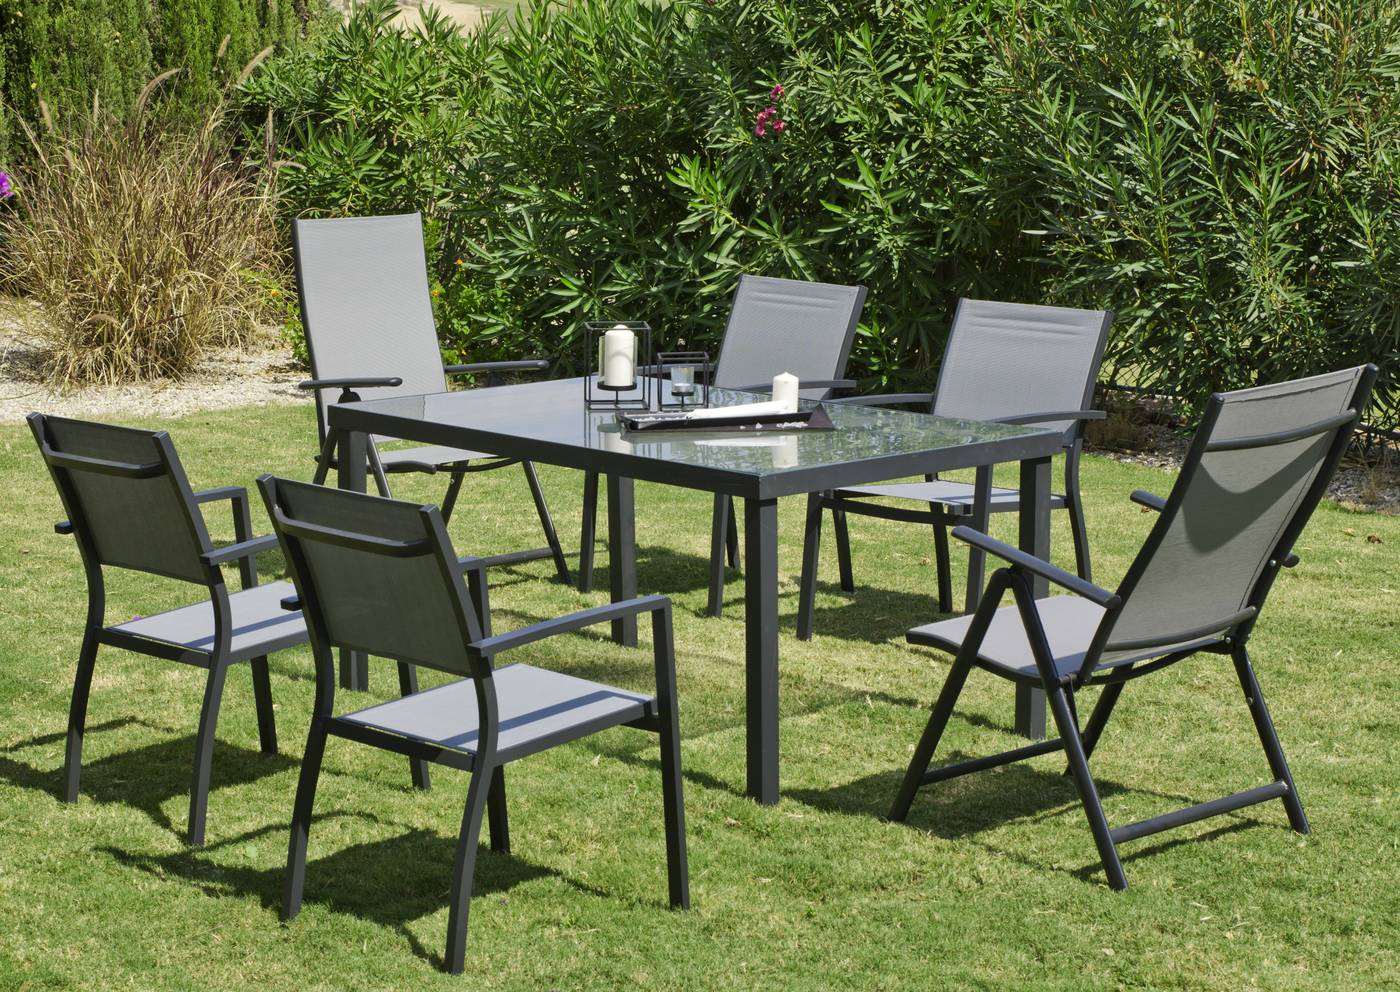 Conjunto aluminio color antracita: mesa de 150 cm + 4 sillones + 2 tumbonas de aluminio y textilen